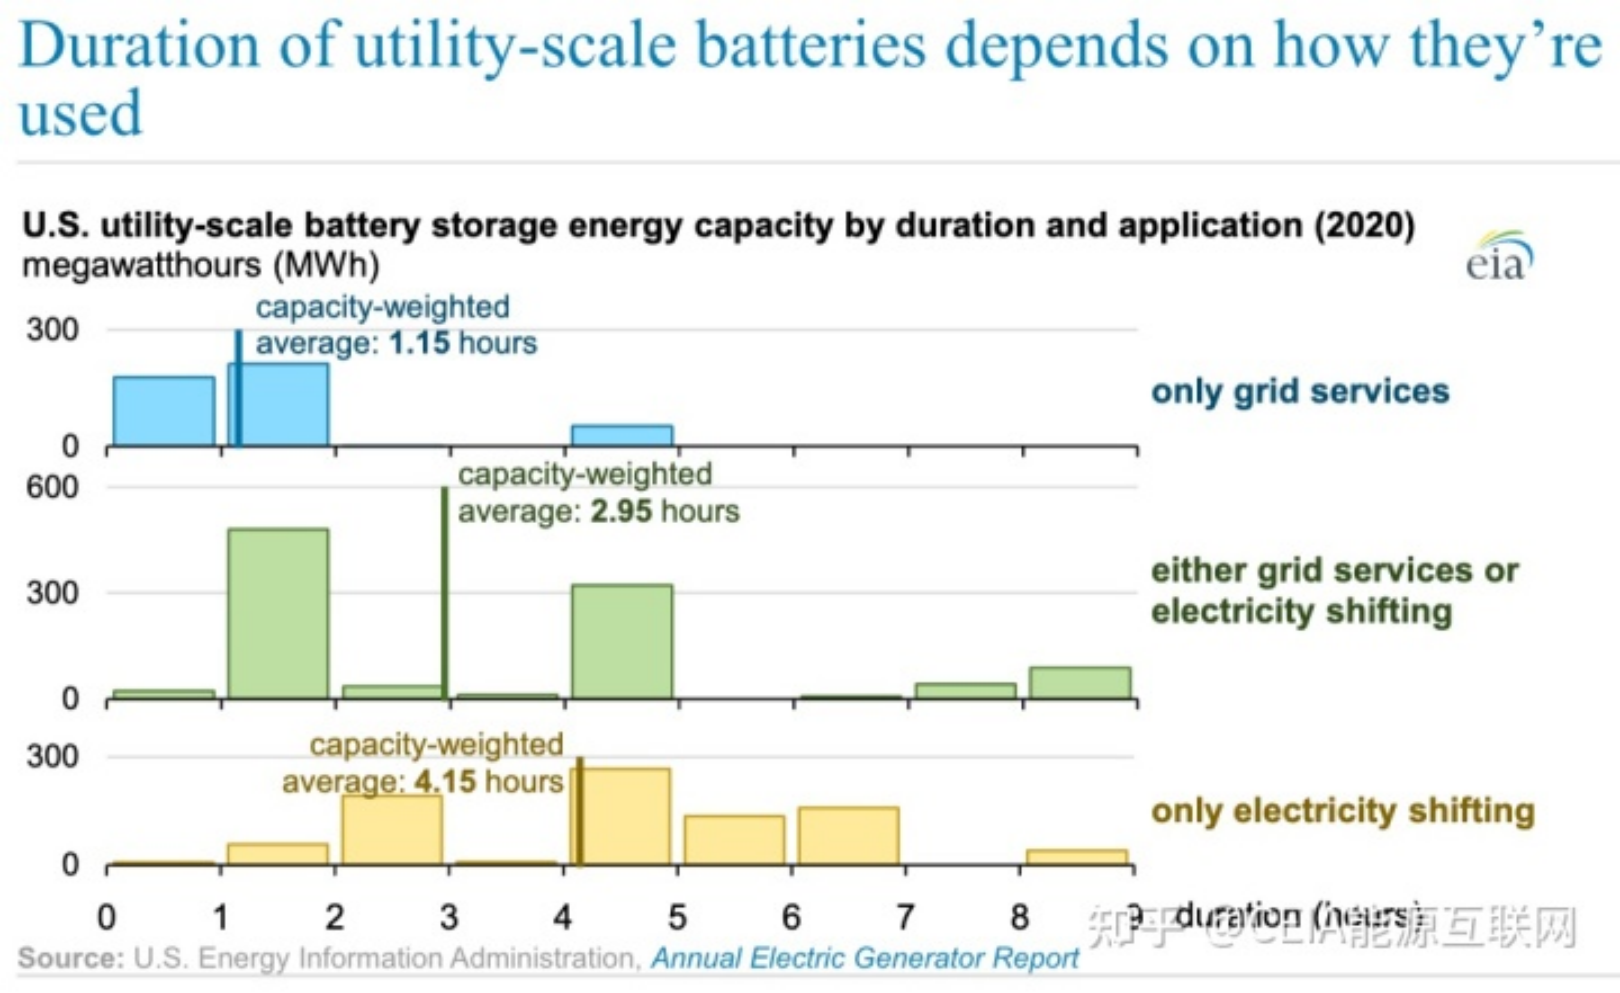 Apa gunane baterei panyimpenan energi skala utilitas AS?